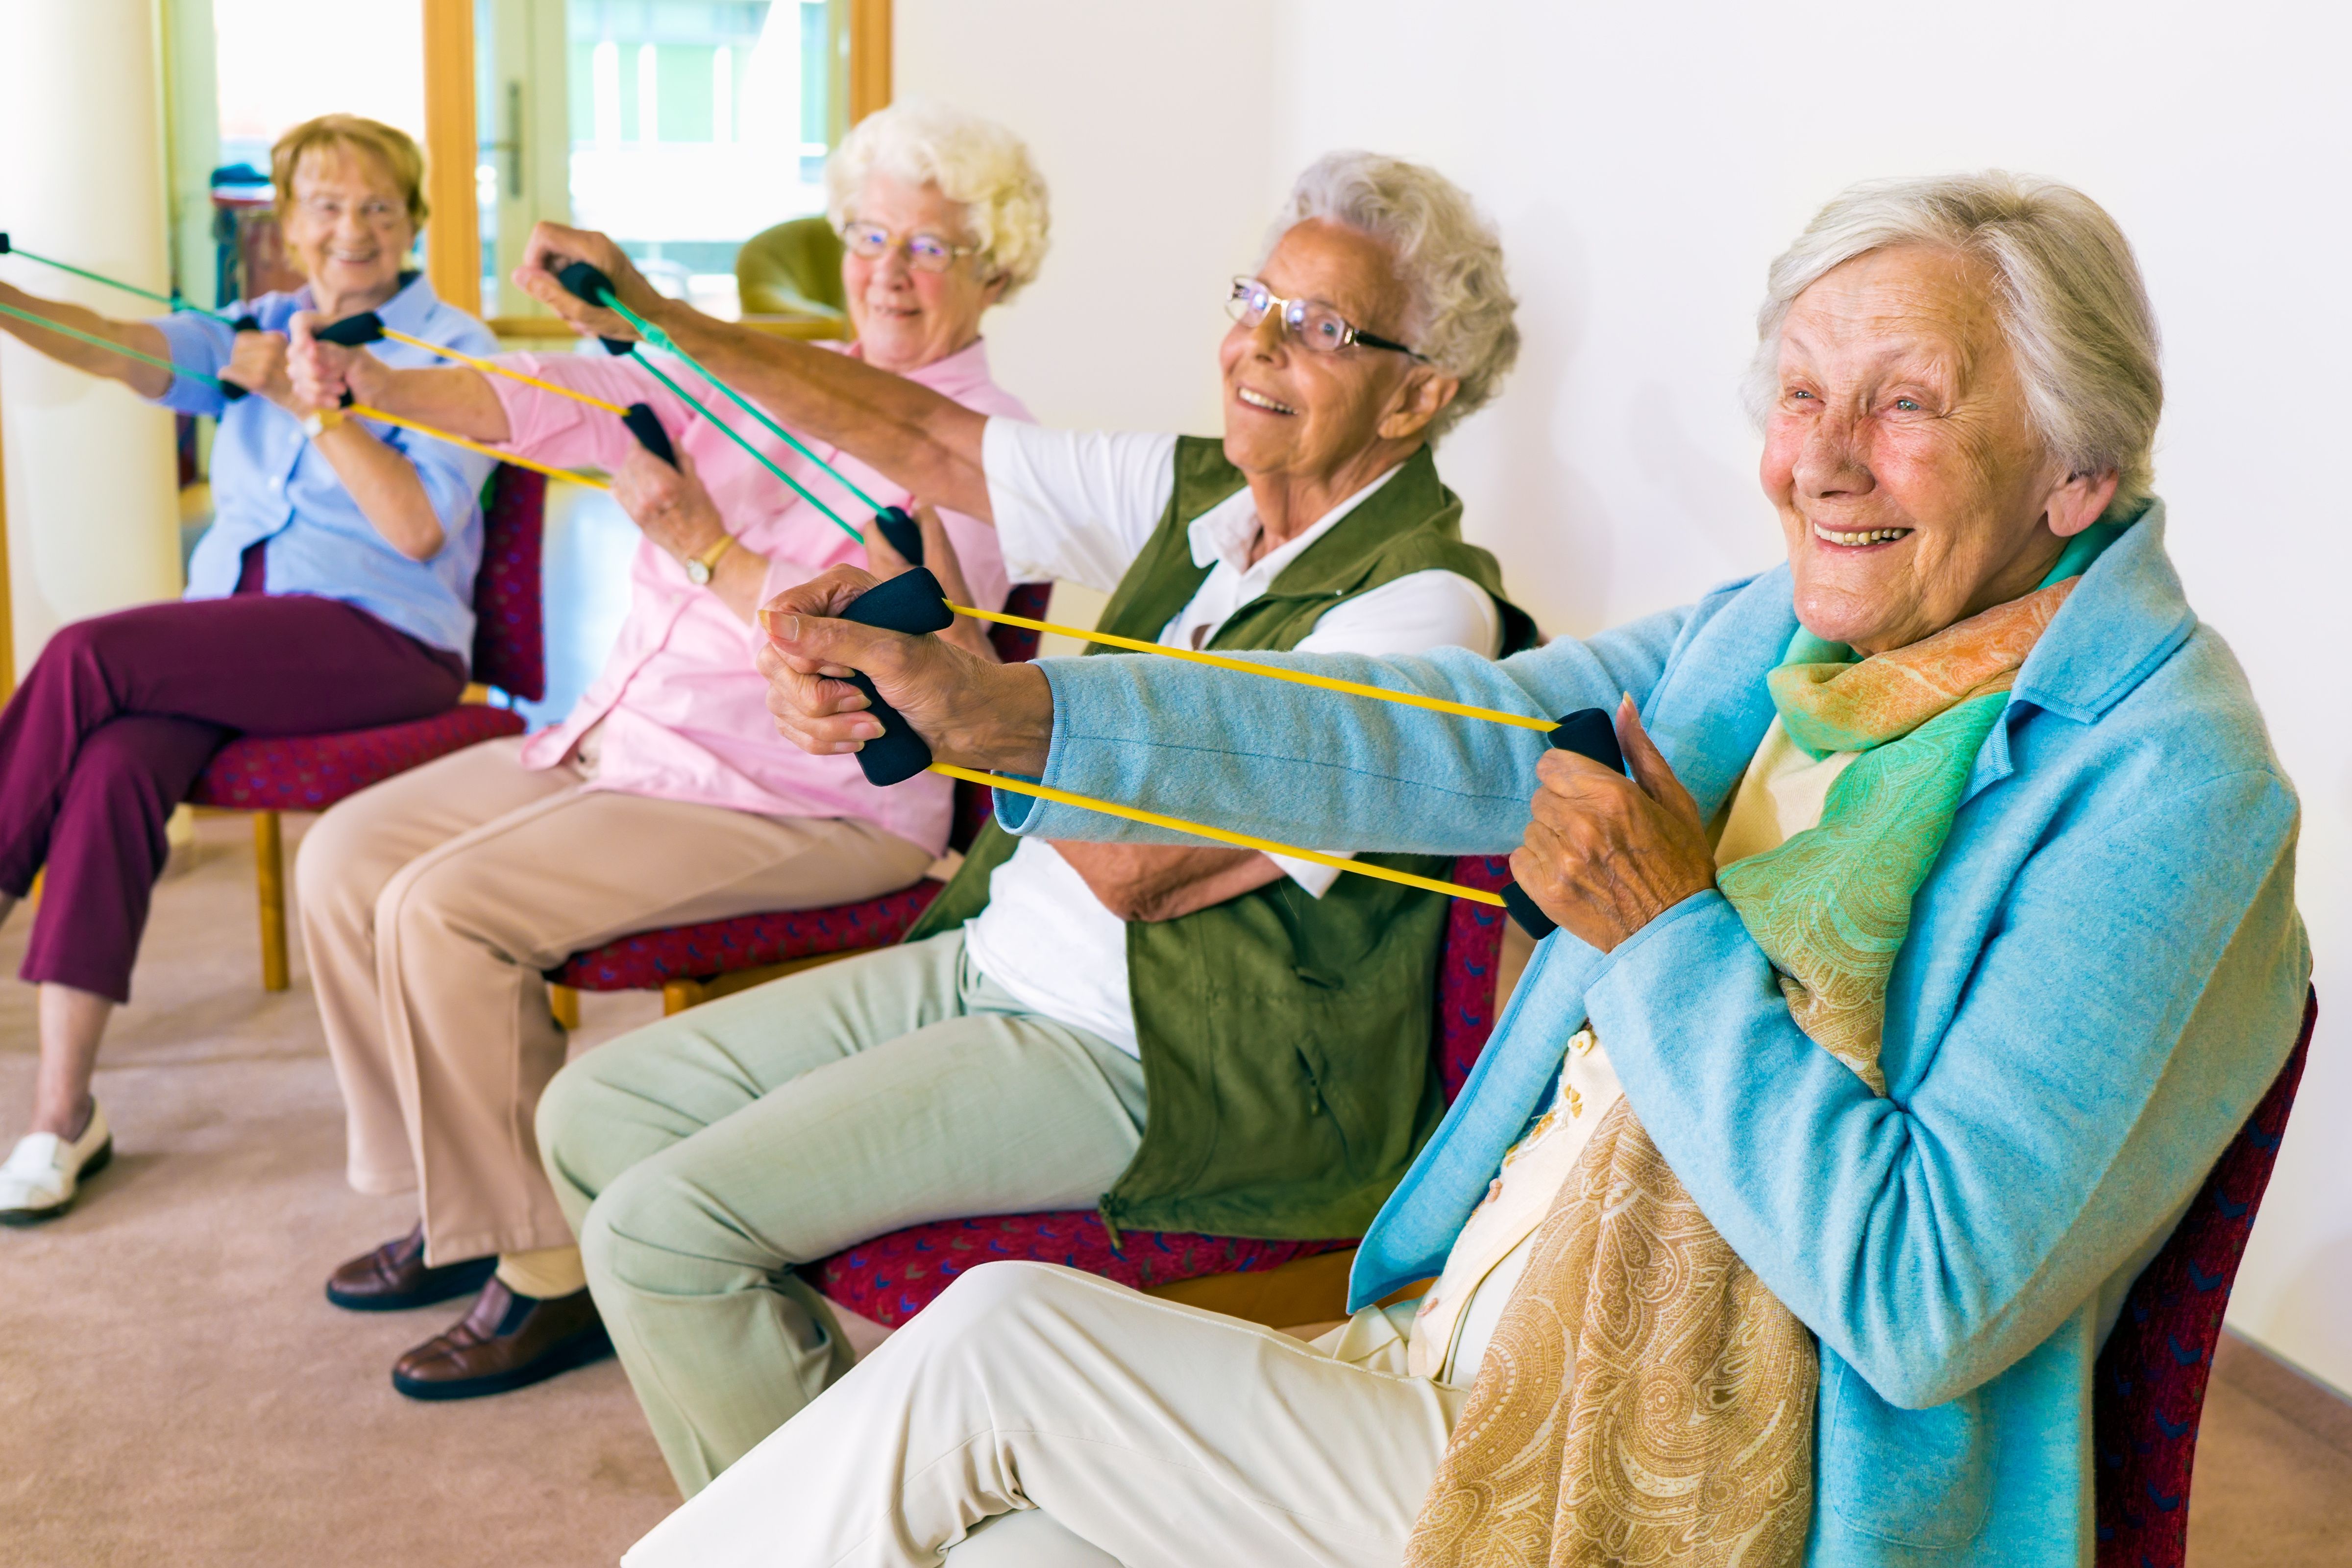 L’esercizio e l’allenamento possono migliorare la cognizione globale nei pazienti anziani con demenza lieve